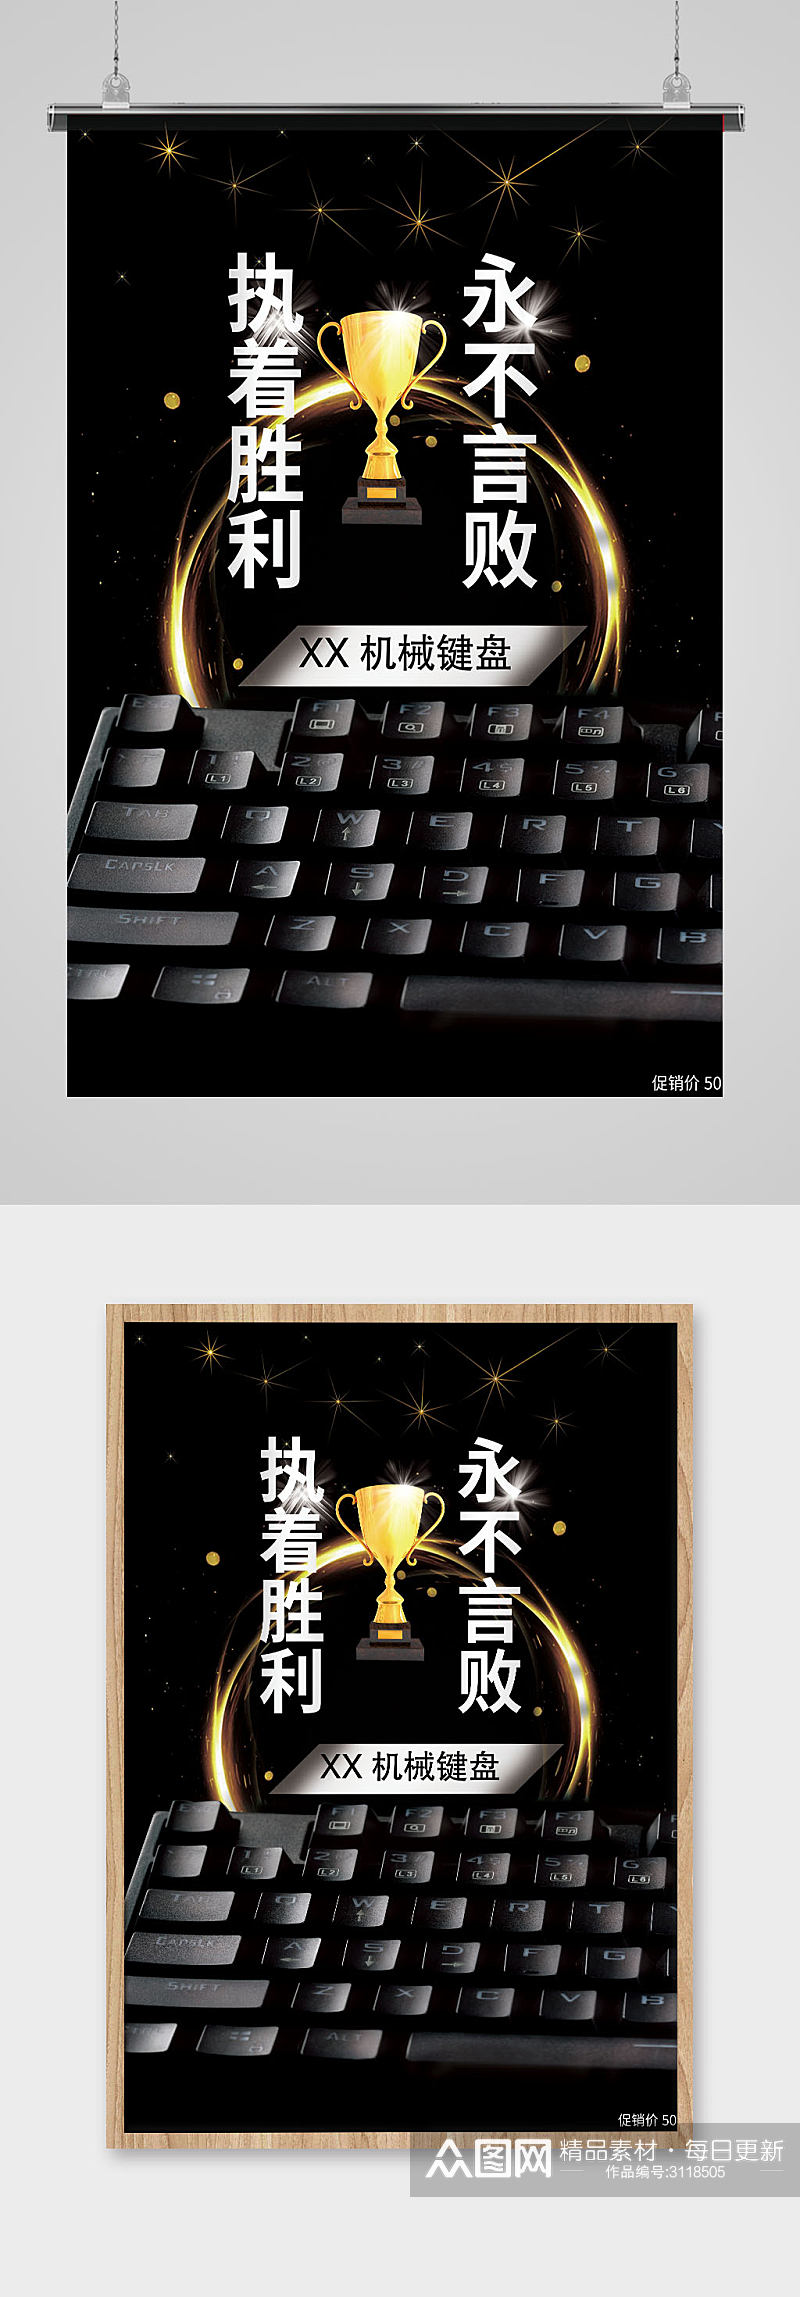 黑色金属闪光机械键盘促销海报素材